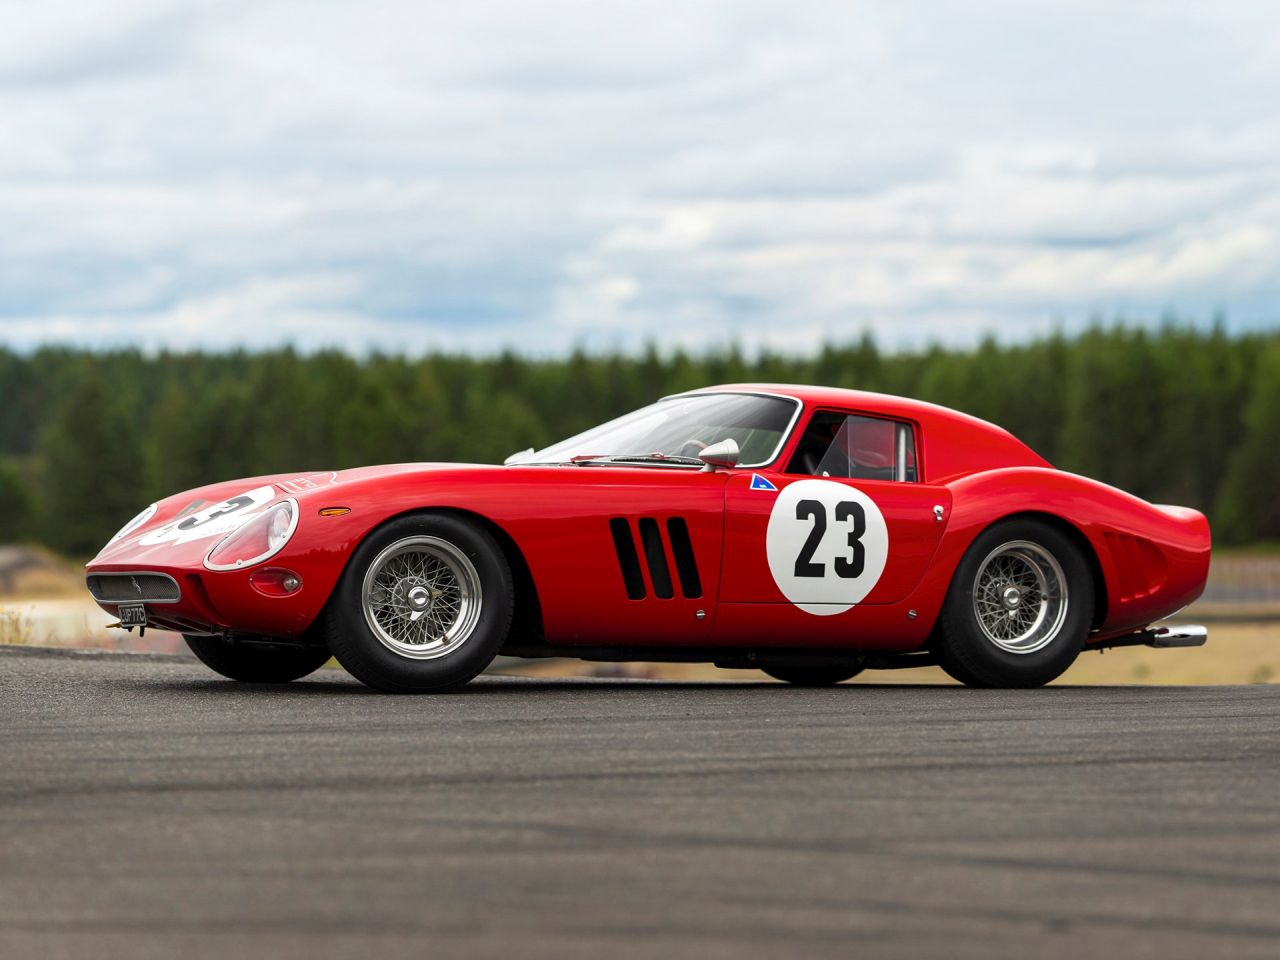 1962 Ferrari 250 GTO fiyatı ile tarihe geçti! - enBursa Haber ...